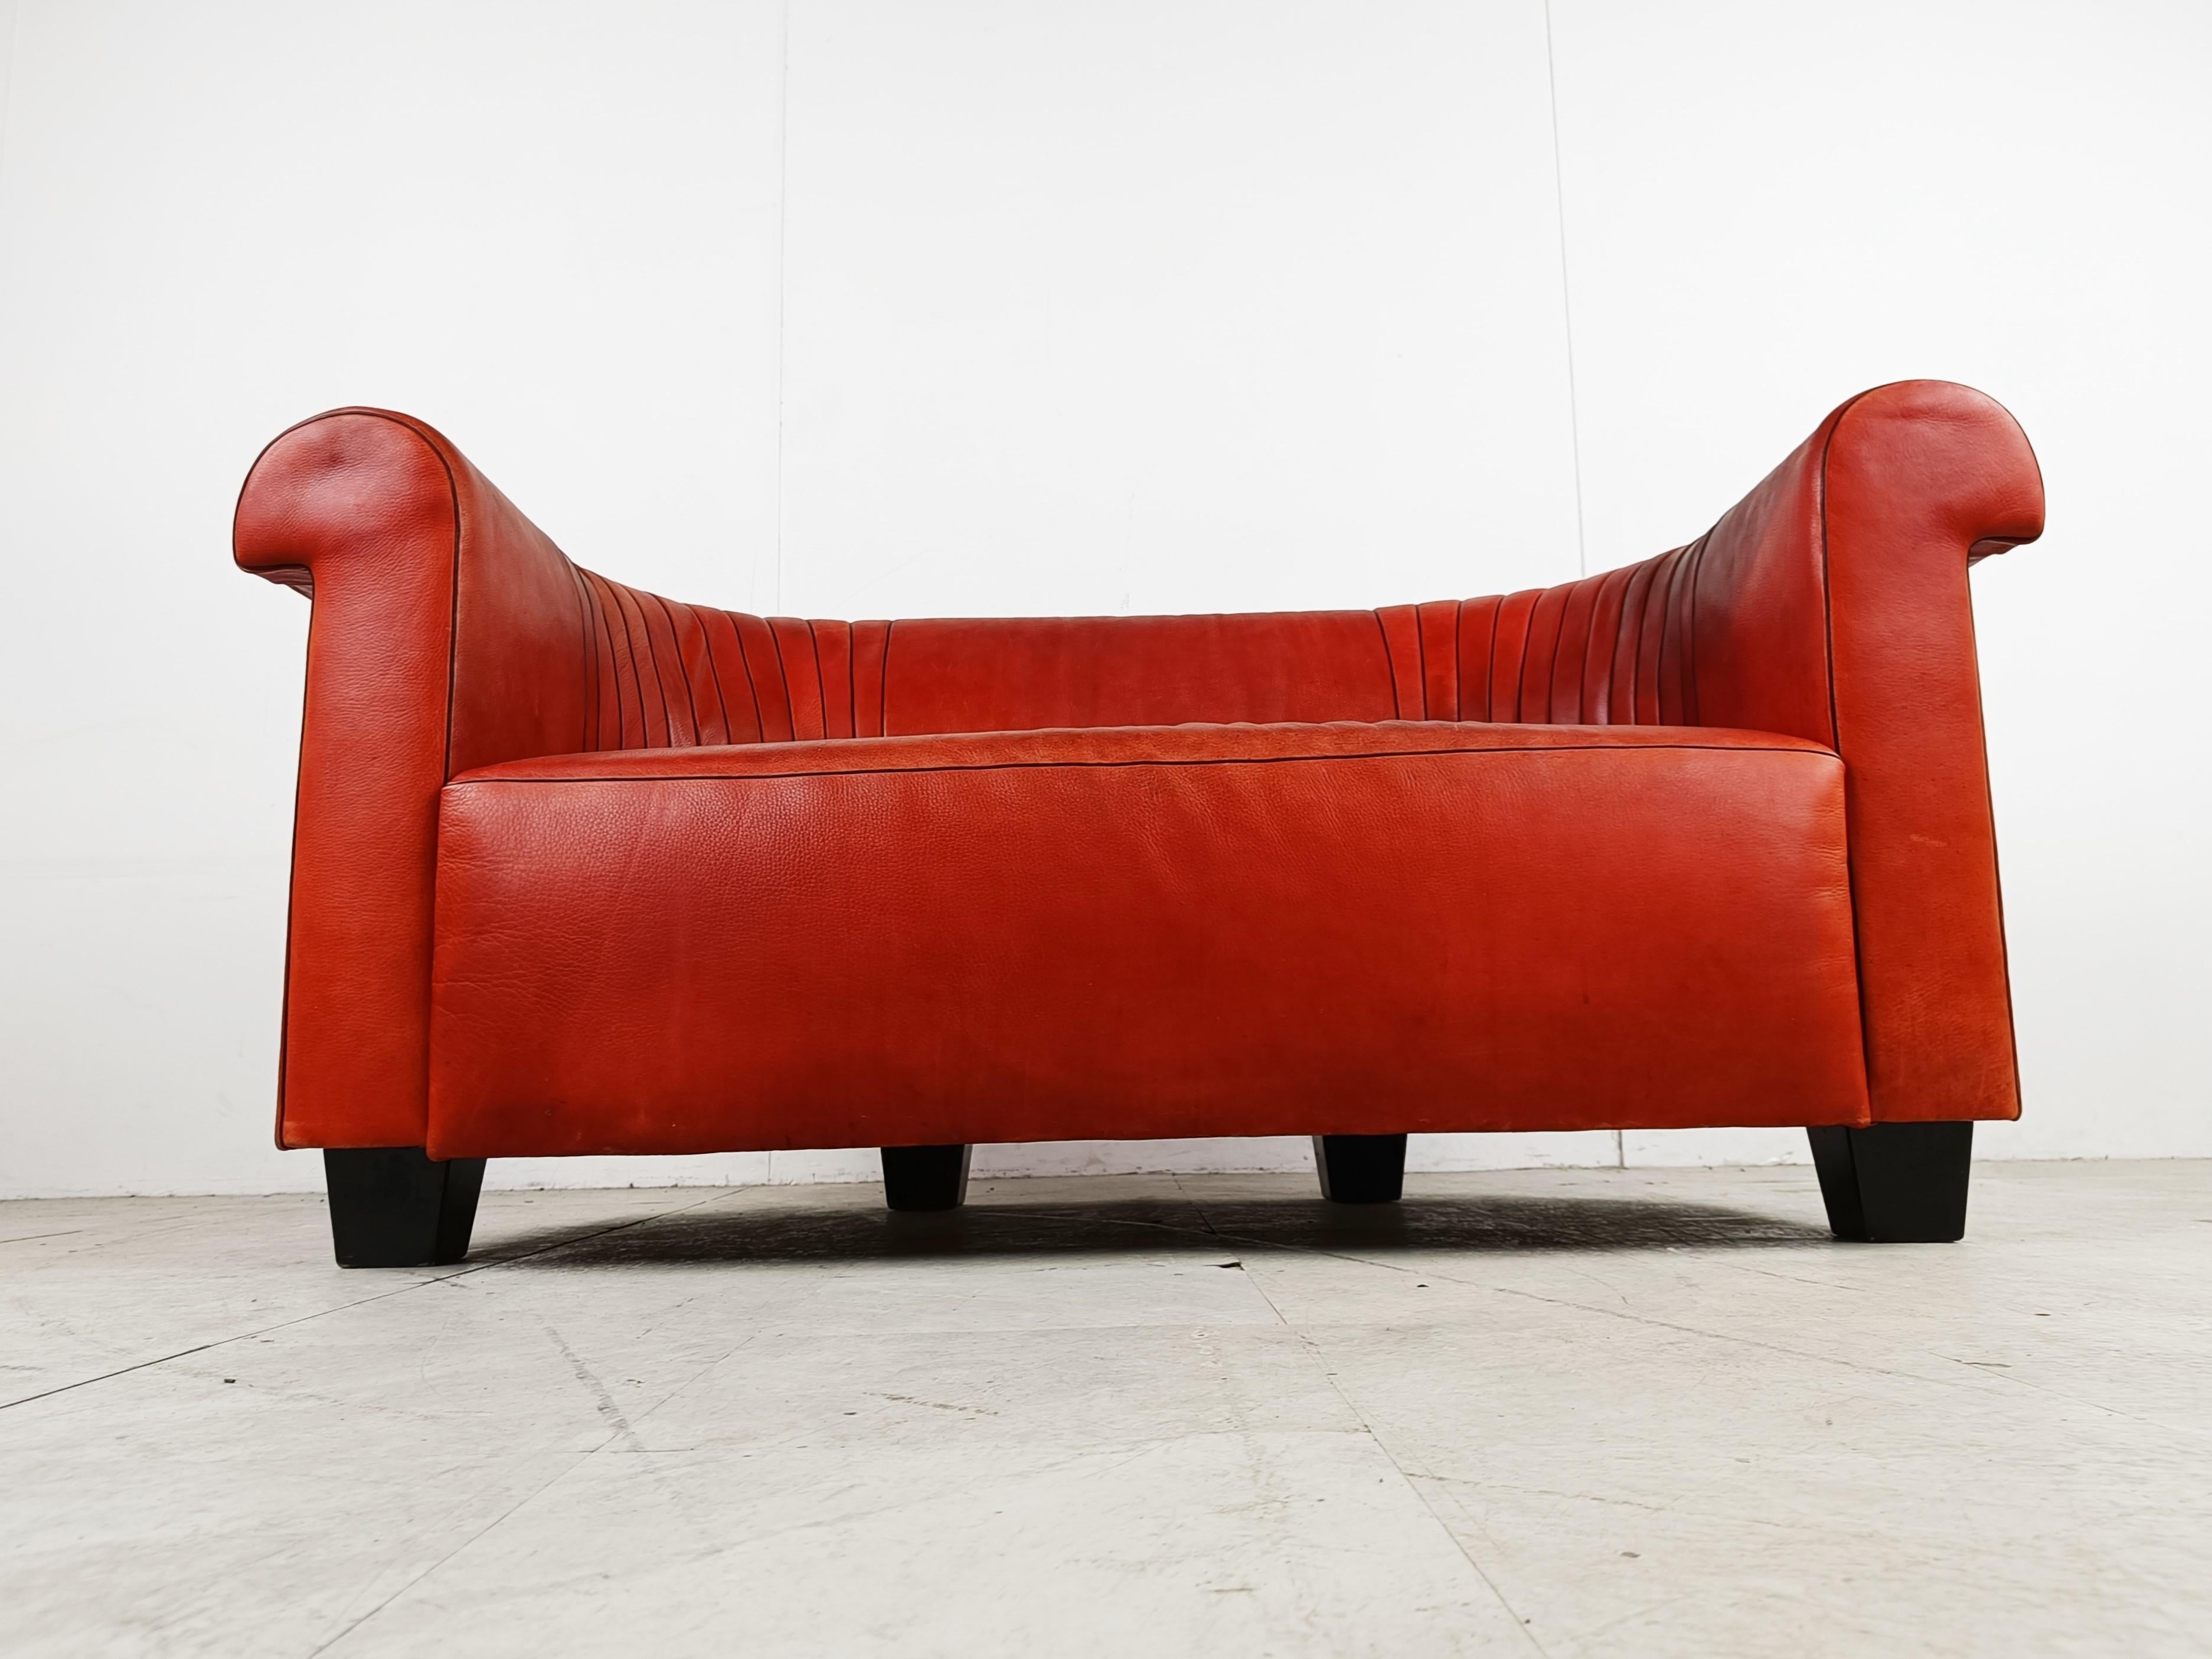 Seltenes Sofa DS700 von deSede.

Schöne rote Lederpolsterung.

Wie immer verwendet deSede hochwertiges Leder. 

Das Sofa hat eine schöne geschwungene Form, ist sehr bequem und hat eine Chesterfield-Atmosphäre.

Schwarze Holzbeine. 

Sehr guter